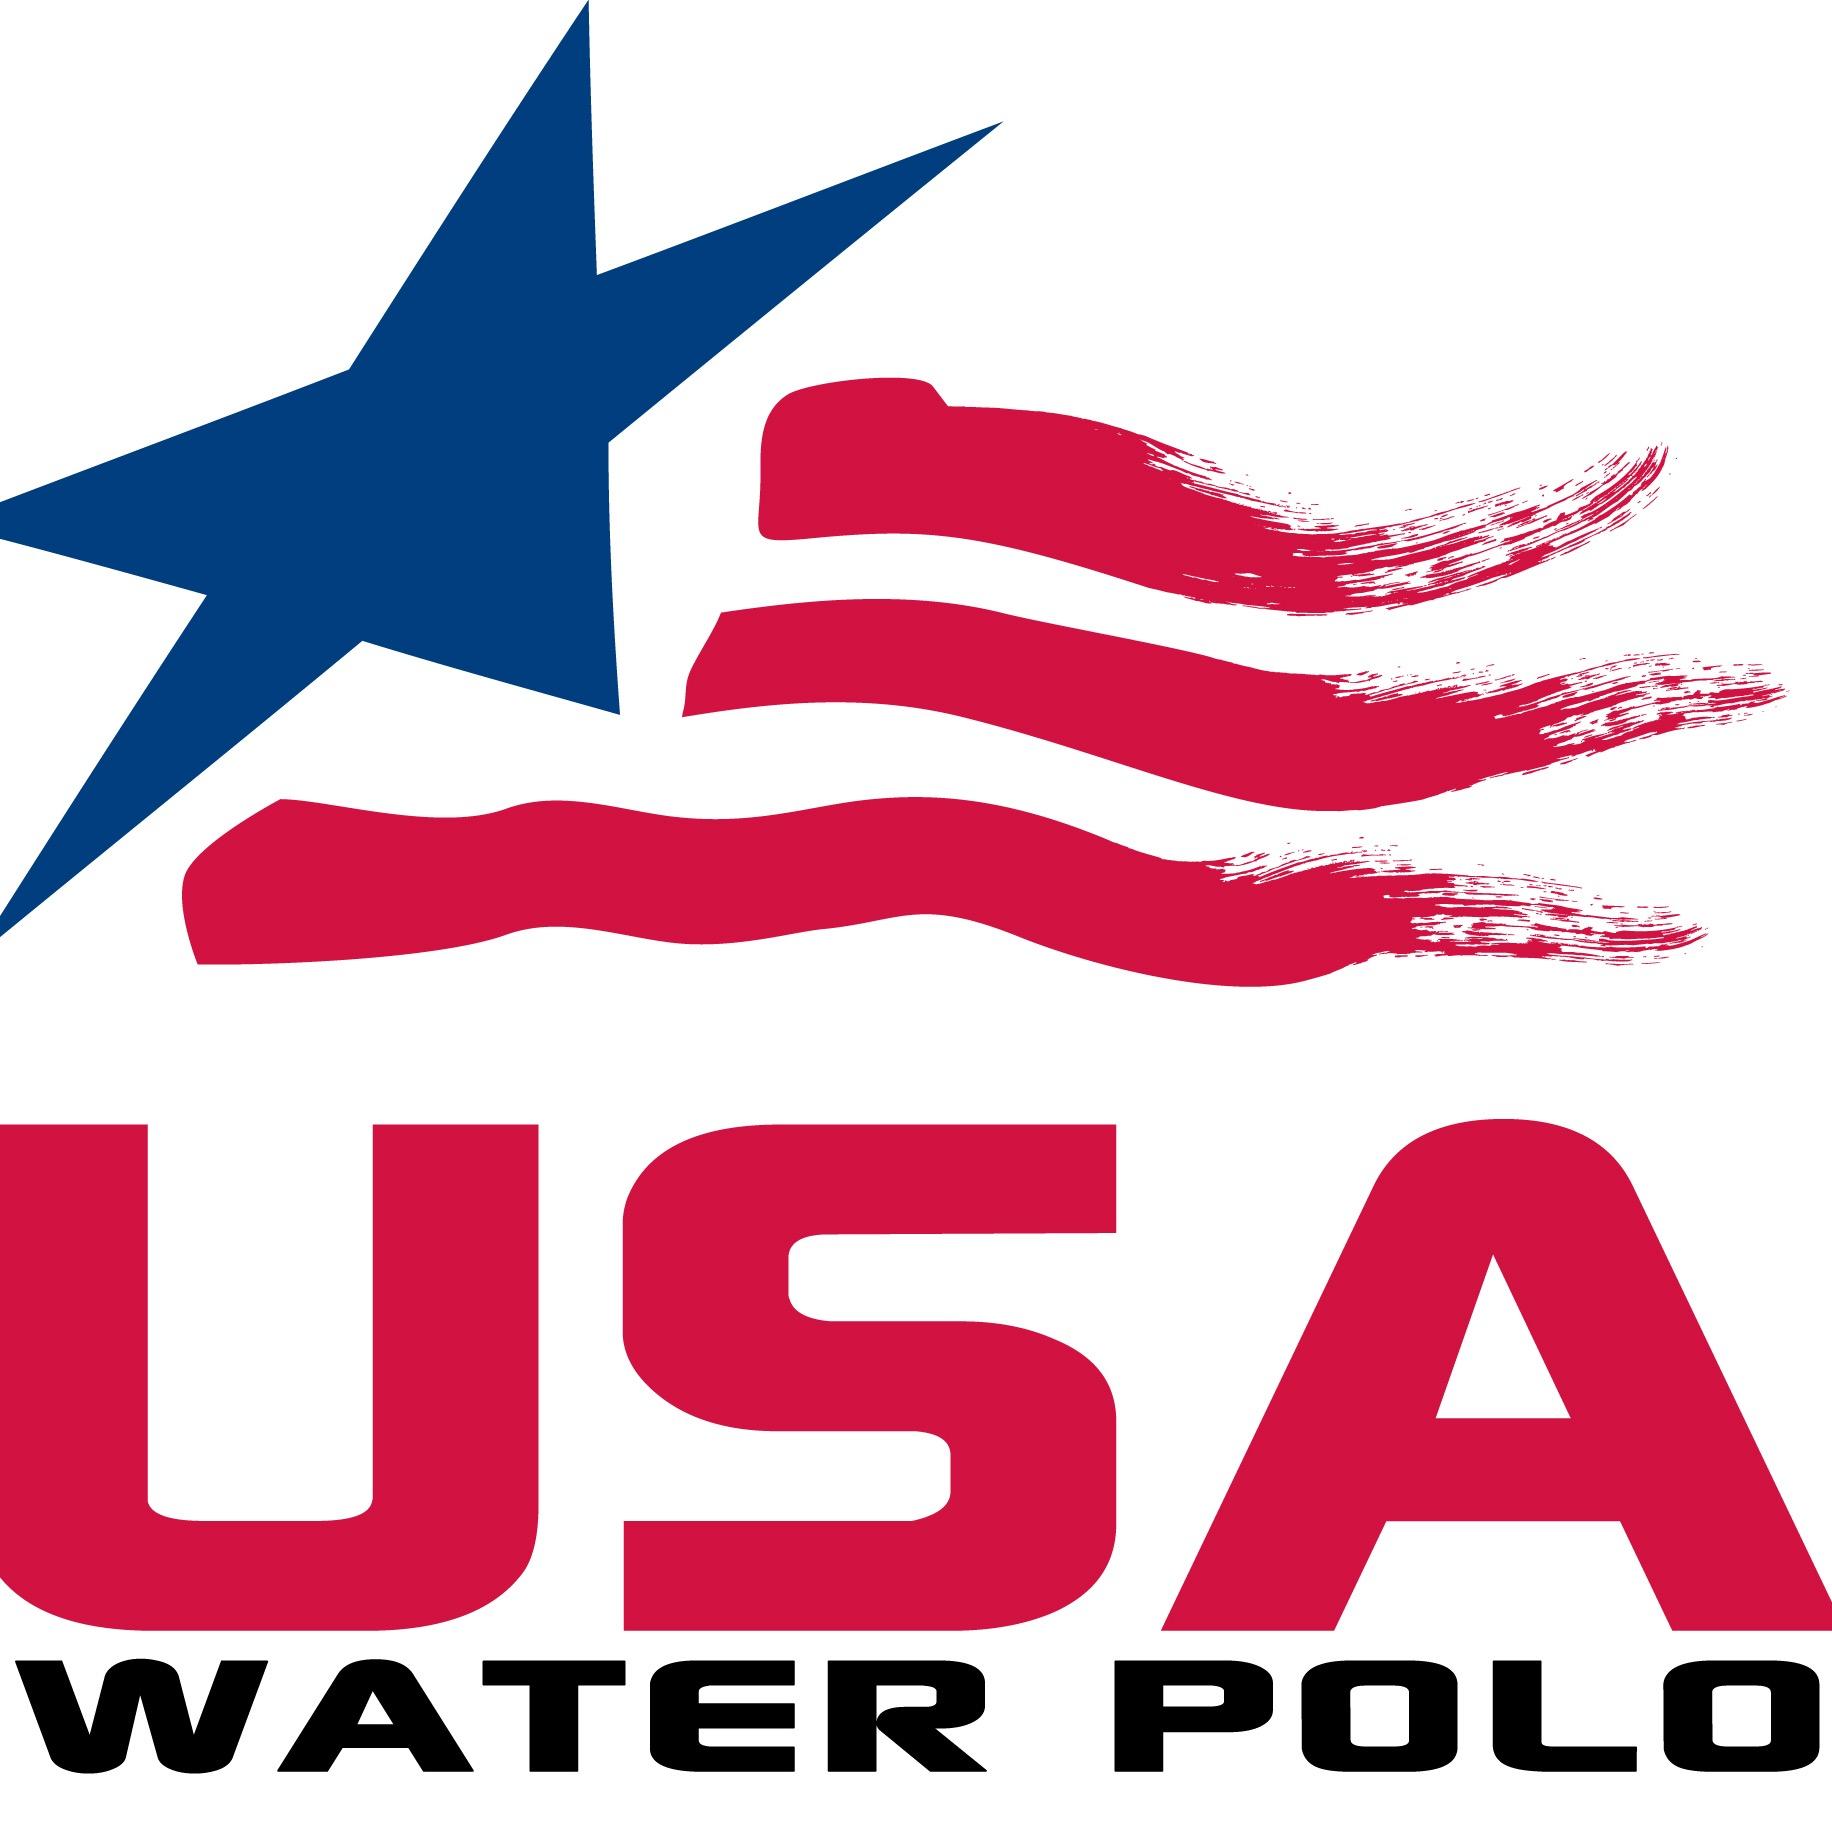 USA WUG Water Polo